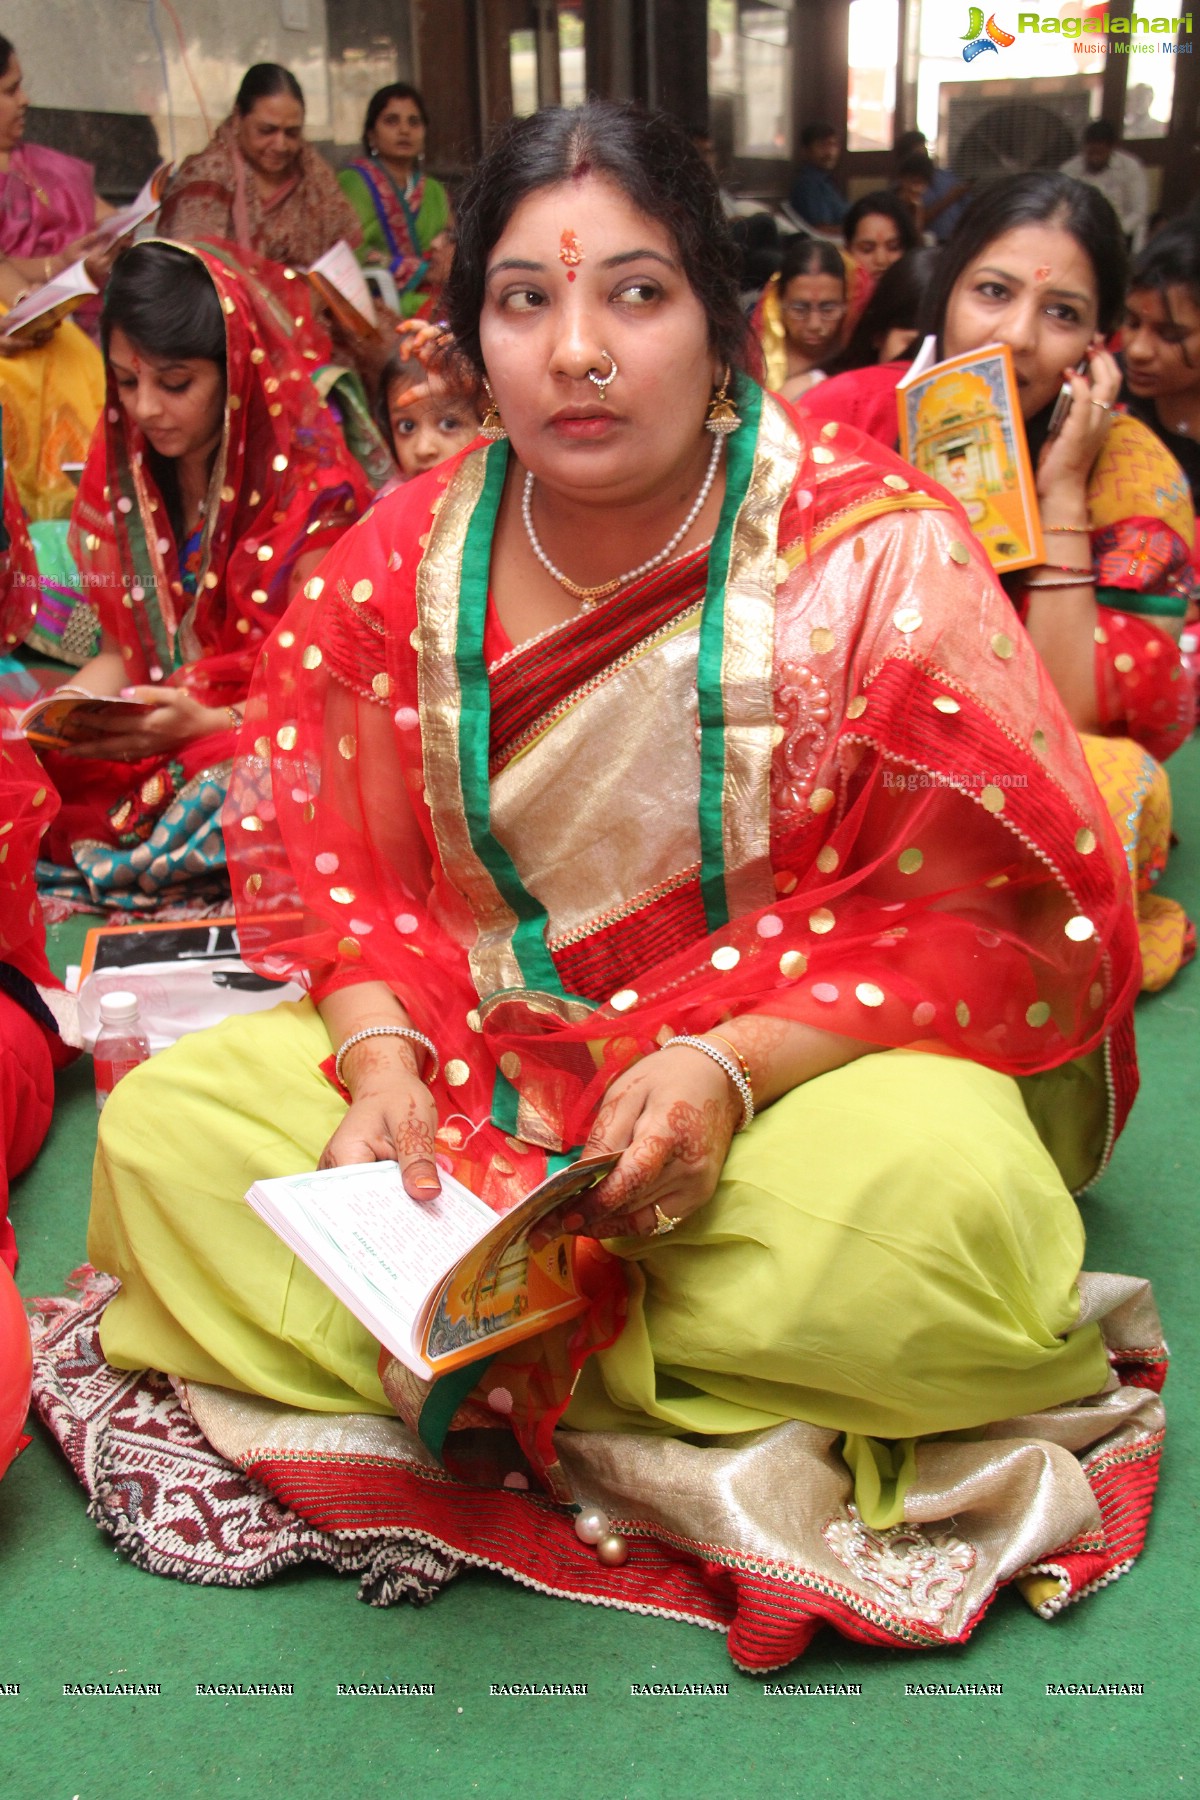 Mangalpath Bhajans by Dalmia Pariwar, Hyderabad